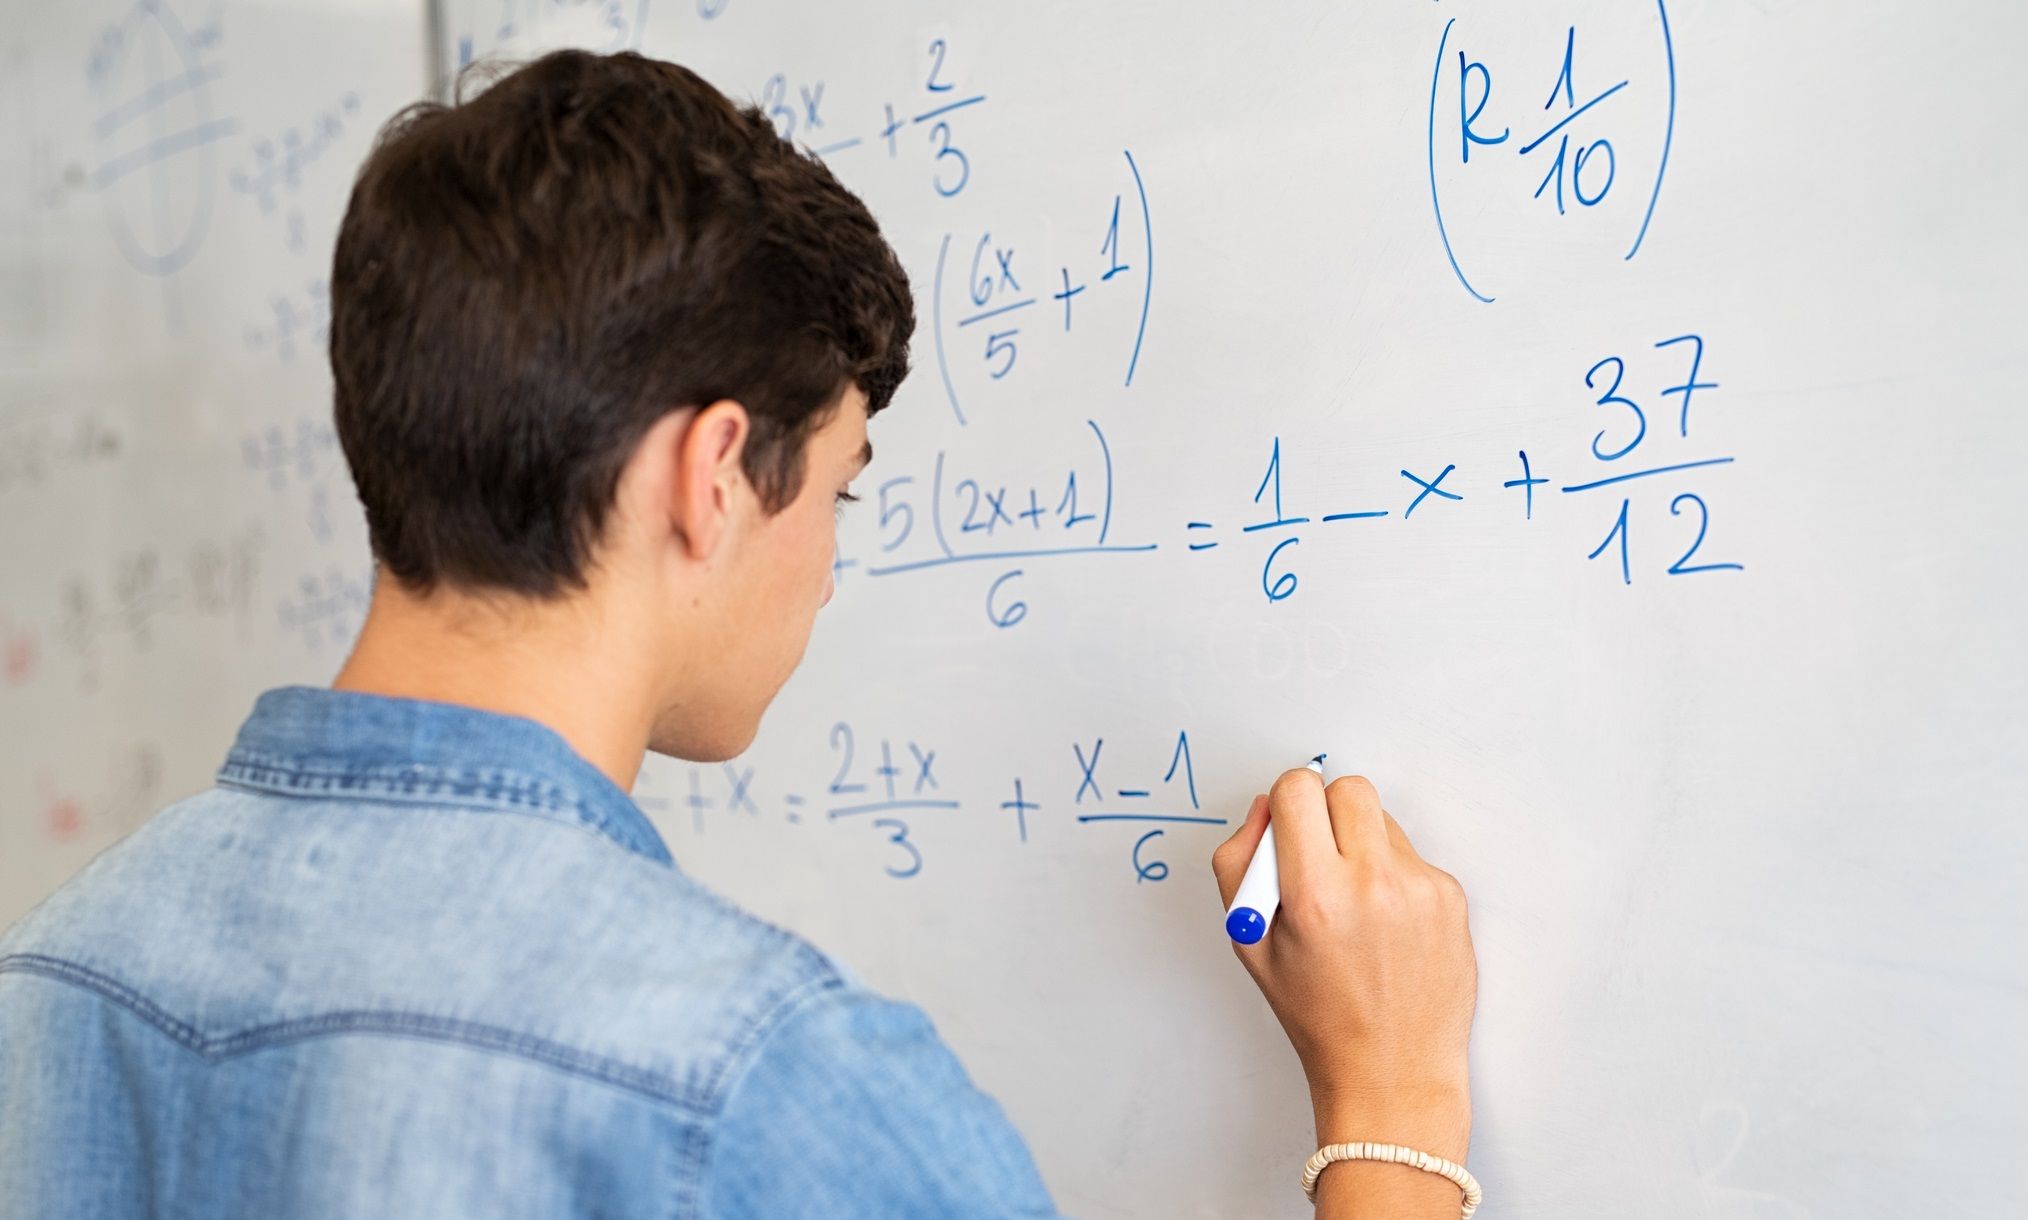 5 carreras que puedes estudiar si te gustan las matemáticas - Blog Emagister